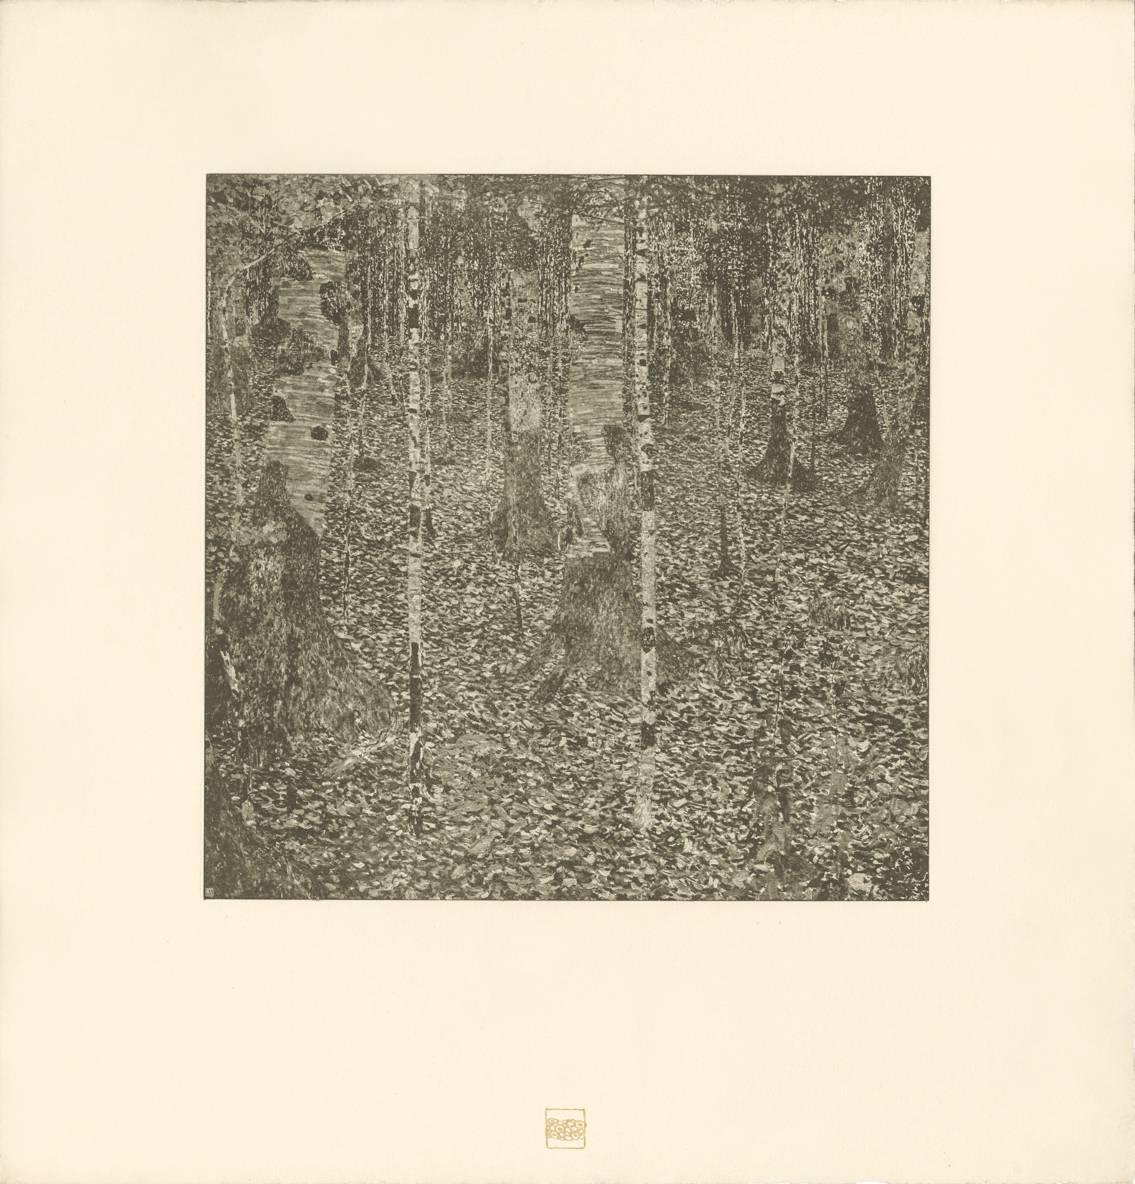 Gustav Klimt & K.K. Hof-und Staatsdruckerei Landscape Print - H.O. Miethke Das Werk folio "Birch Forest I" collotype print